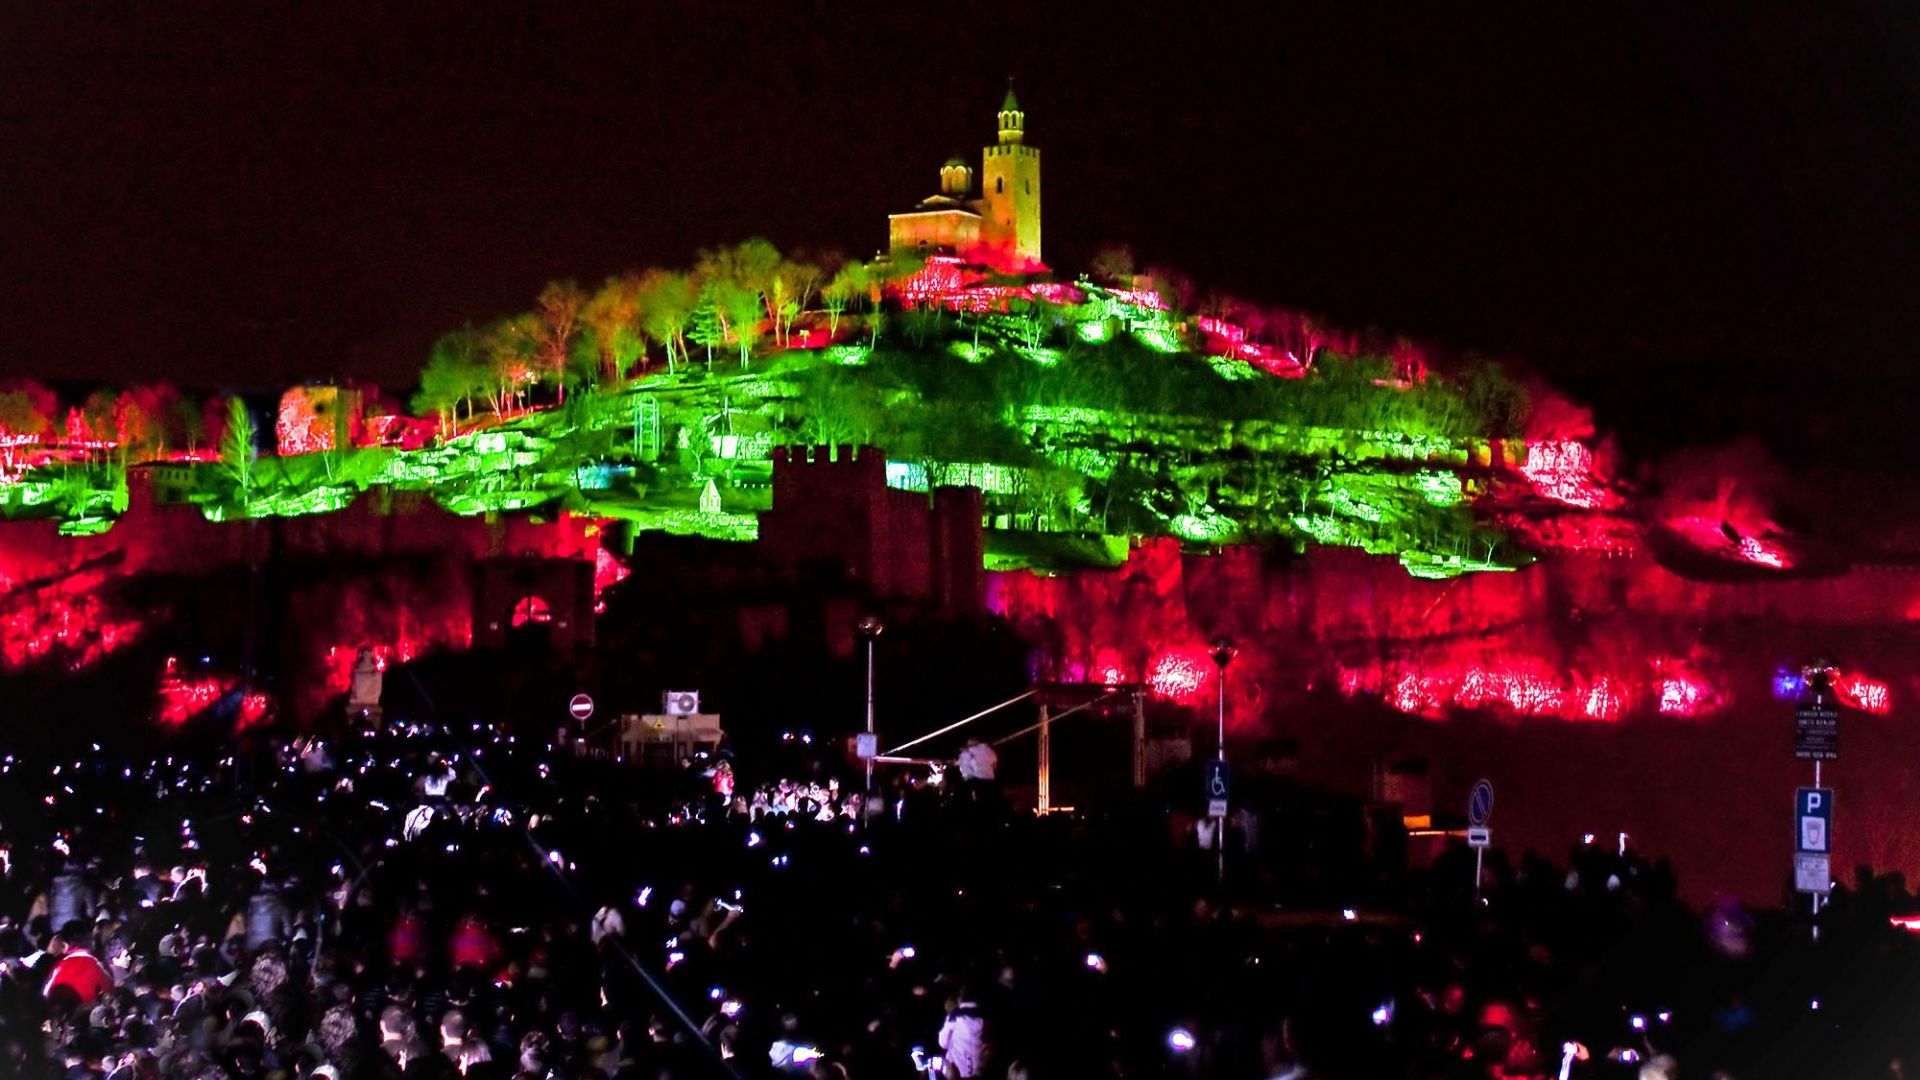 Велико Търново празнува: Спектакълът "Звук и светлина" навършва 39 години